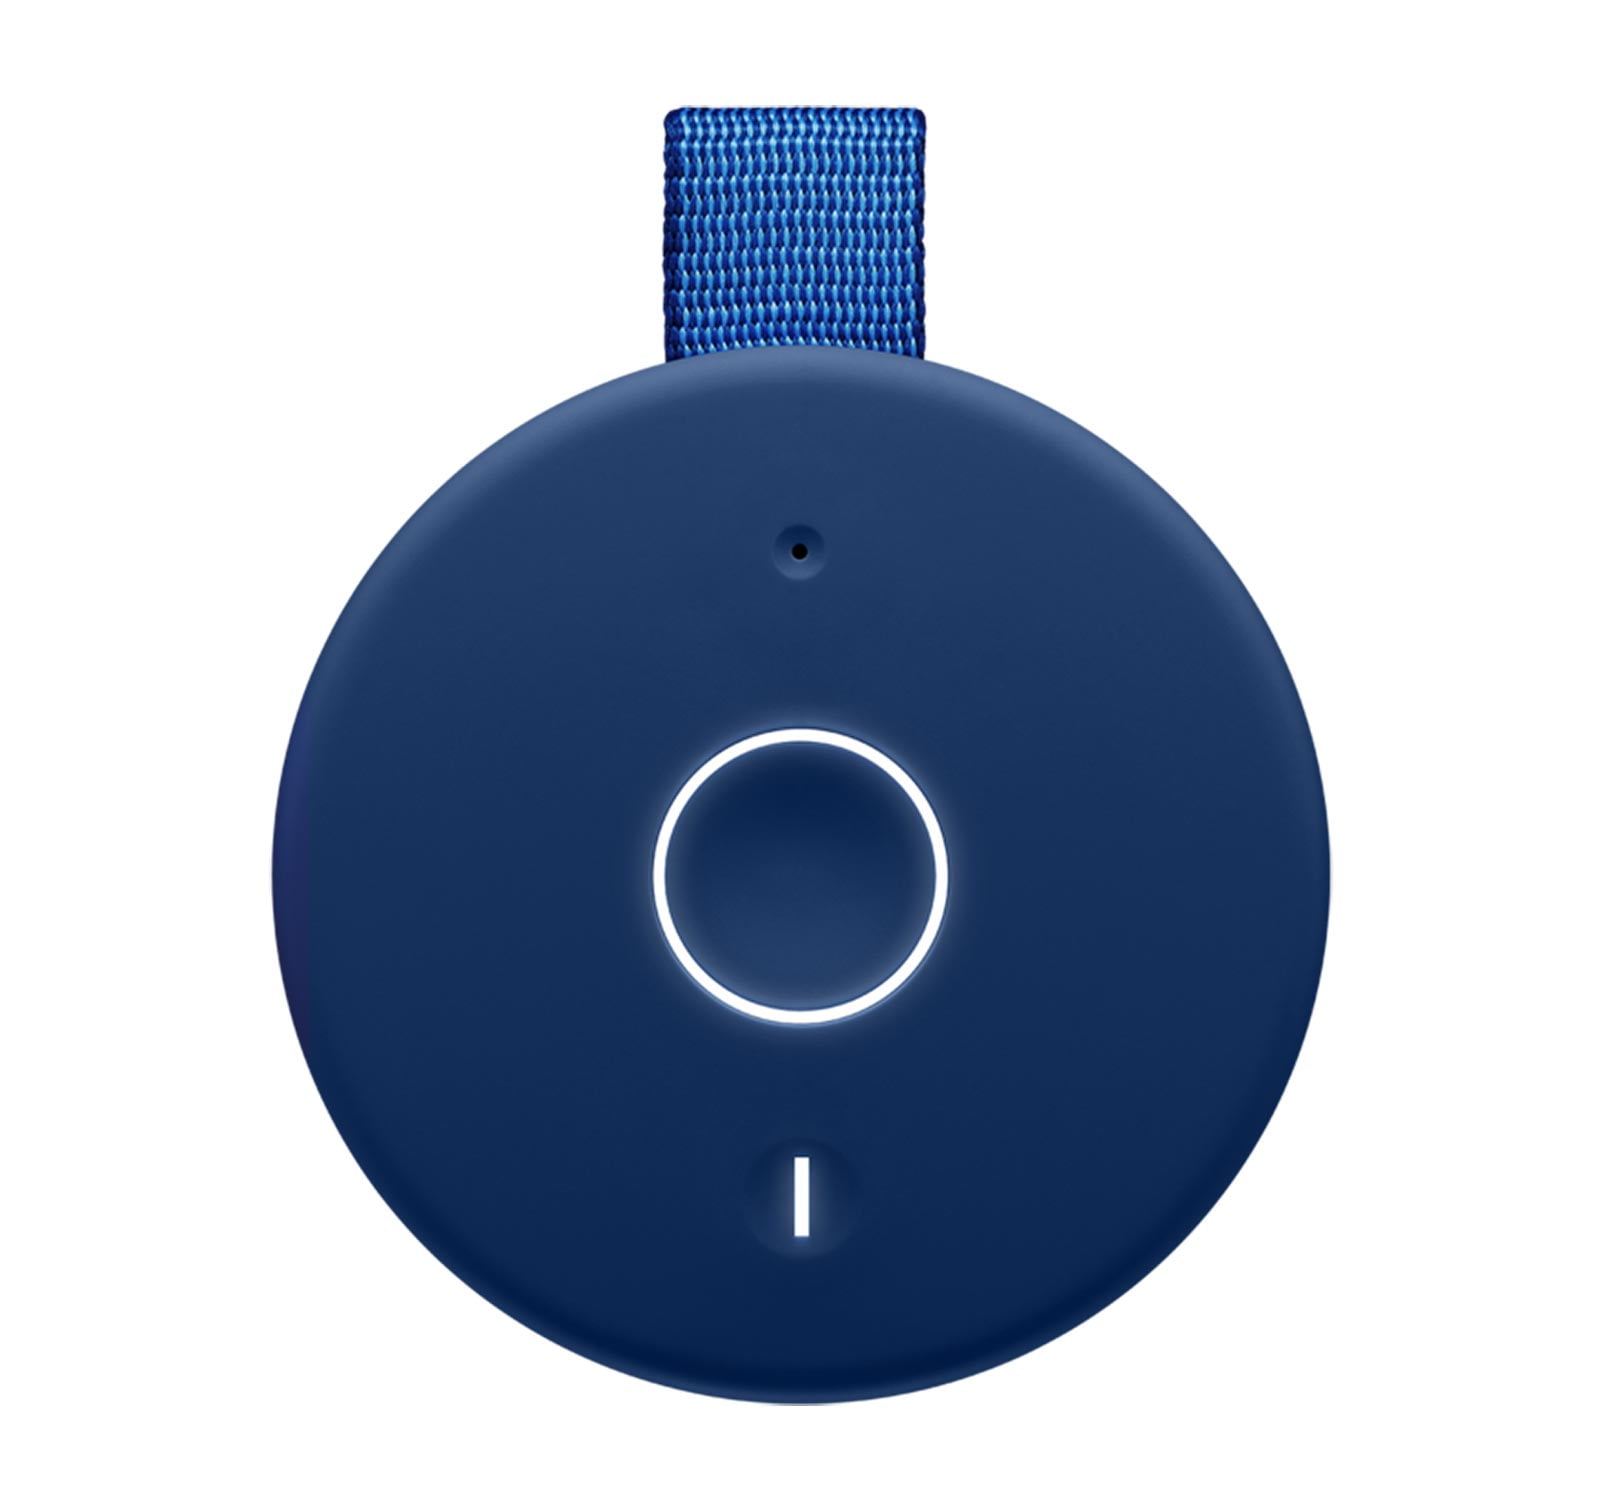 Ultimate Ears MEGABOOM 3 Portable Bluetooth Speaker - Lagoon Blue 